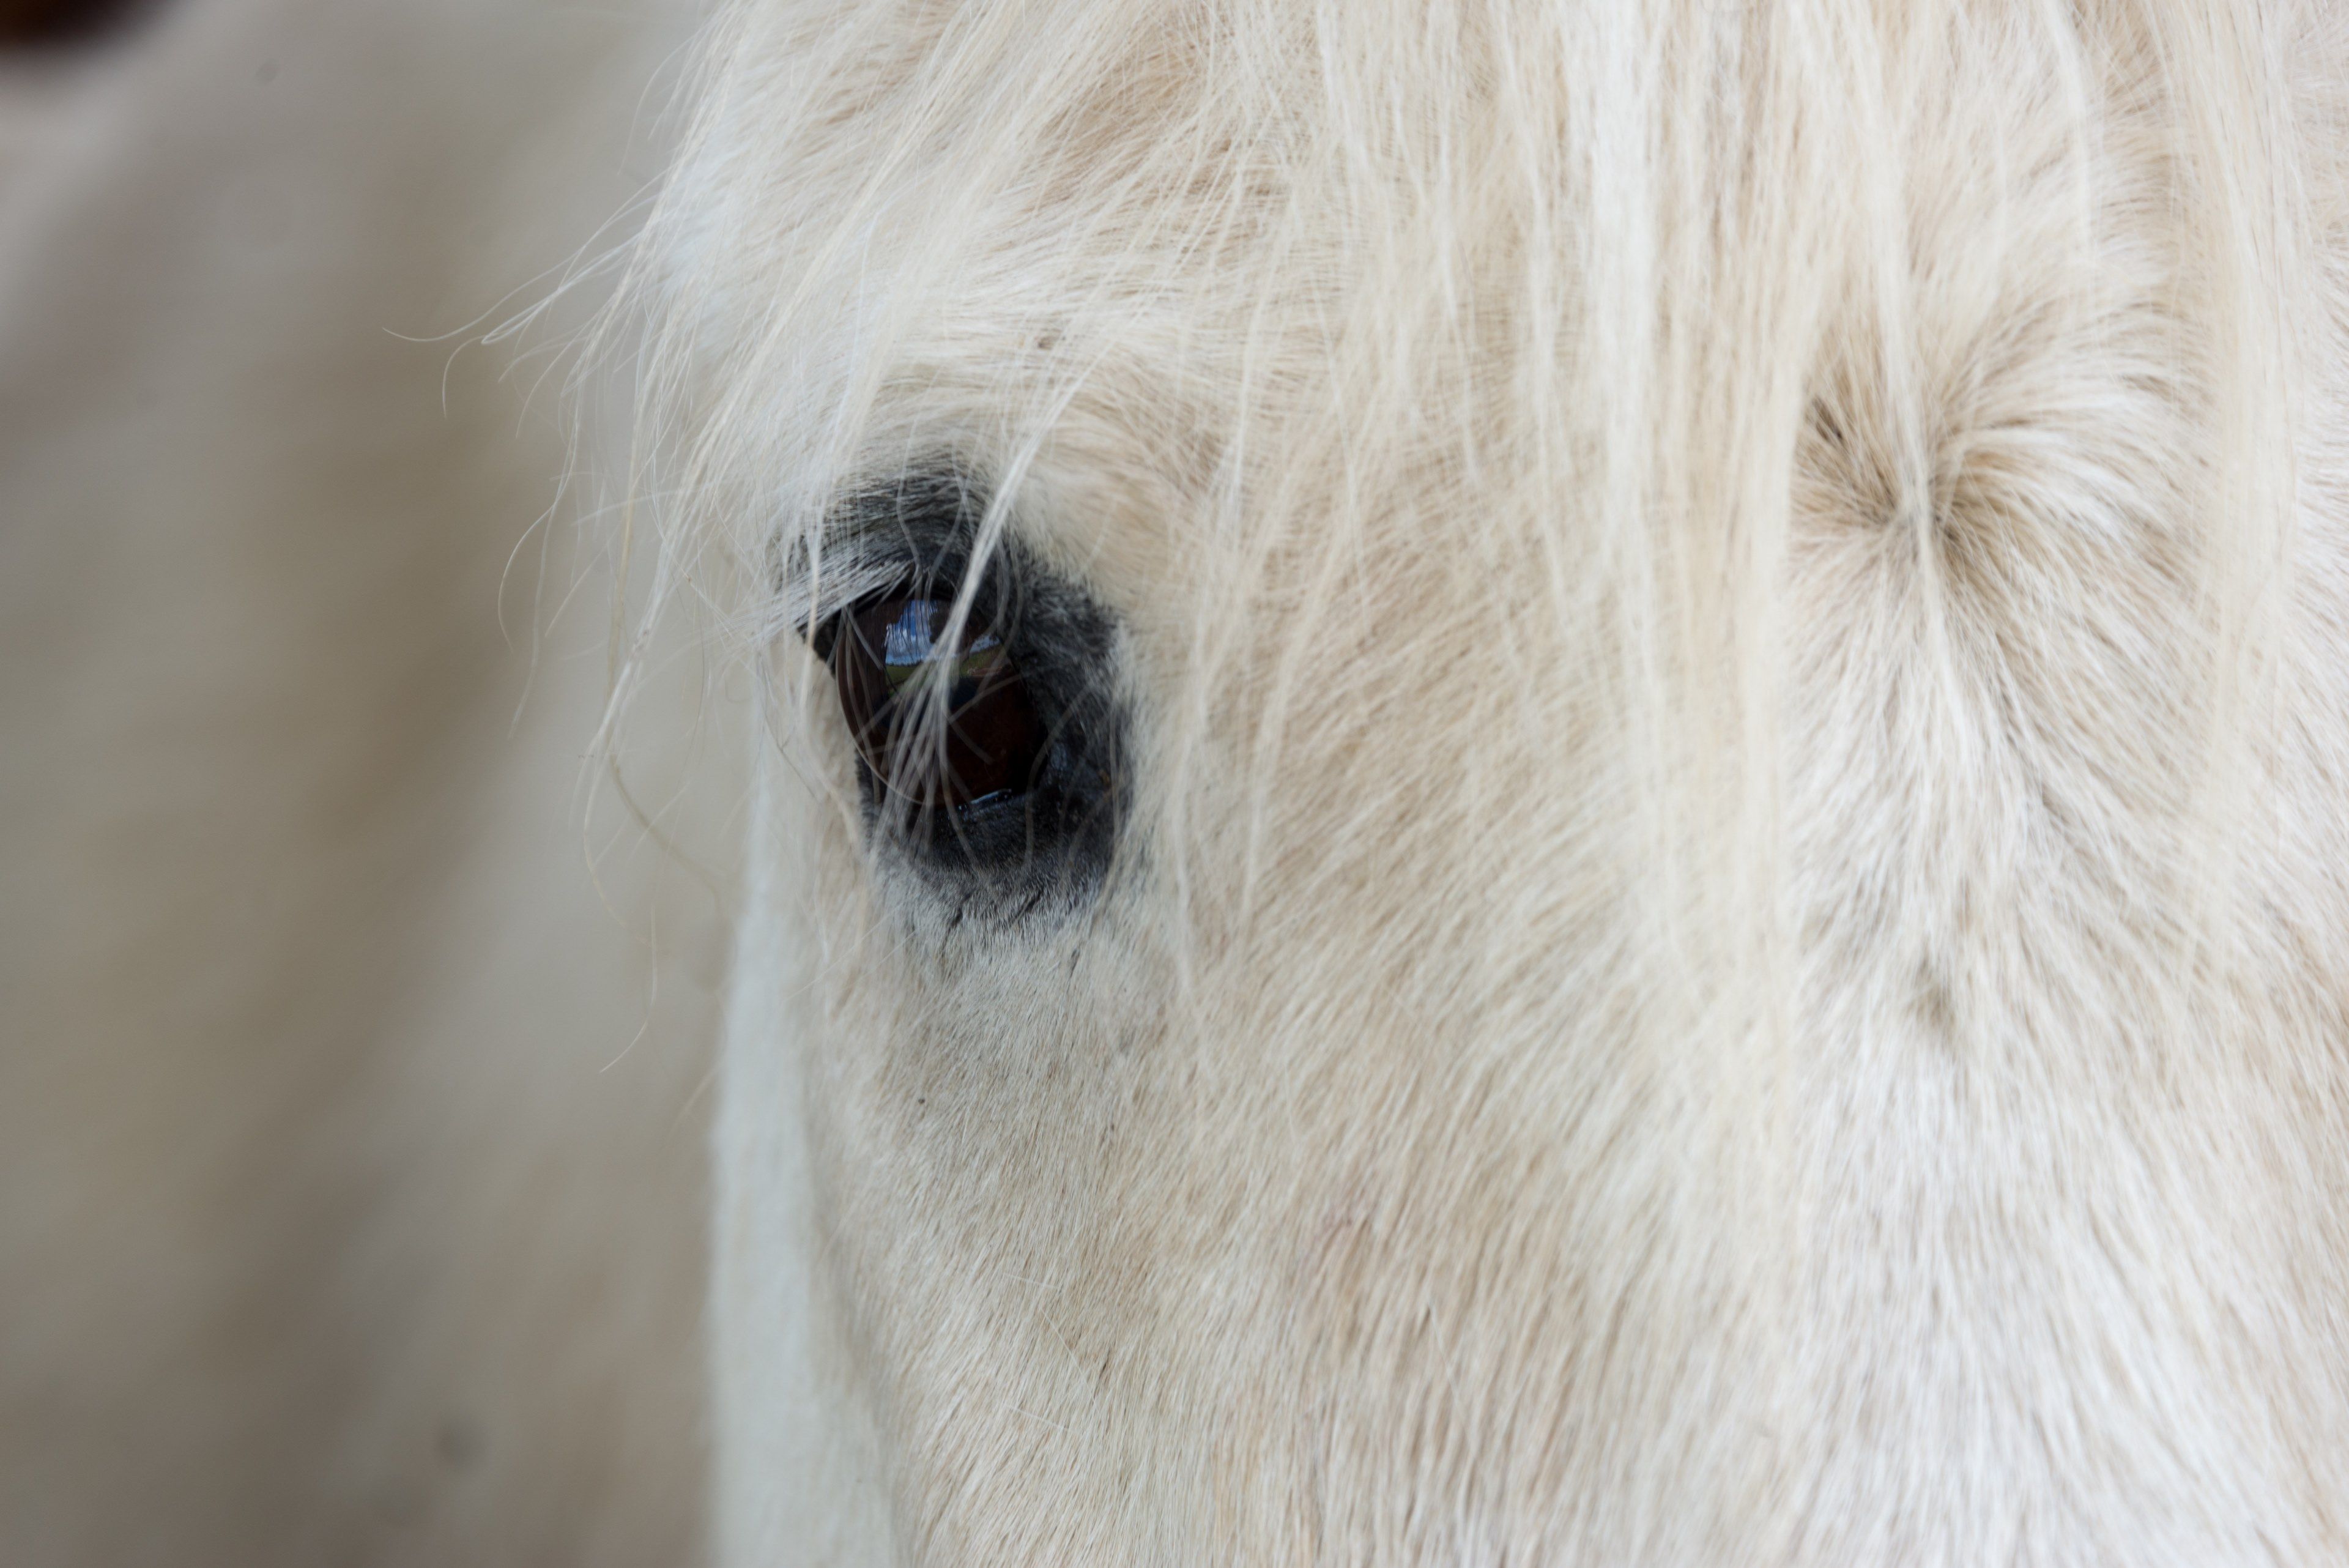 Wallpaper / horse eye horse face and eye HD 4k wallpaper